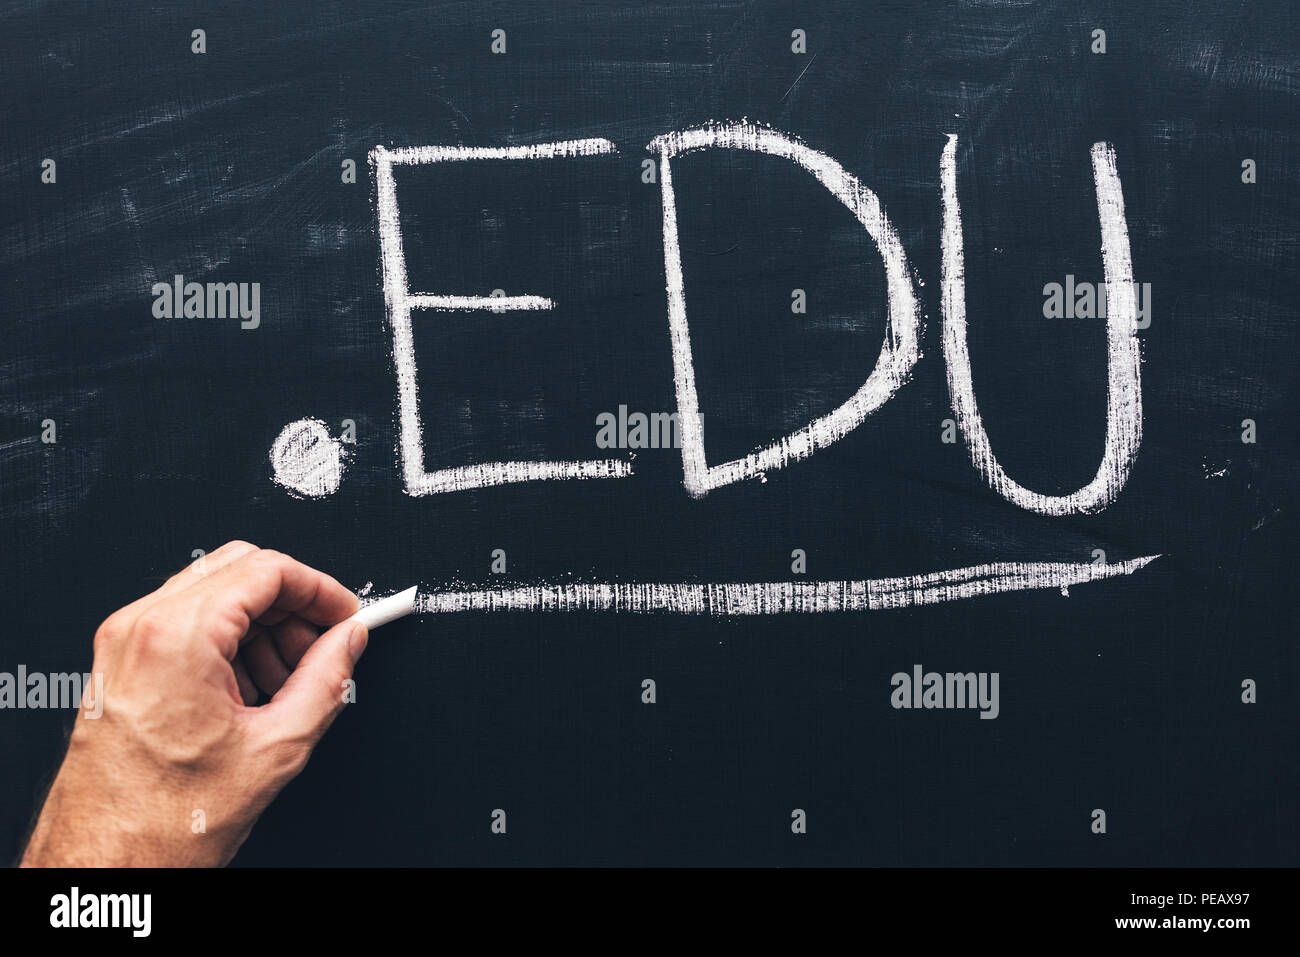 Internet Domain edu für Bildungseinrichtungen, konzeptionelle Bild von Text mit Kreide auf die Tafel geschrieben Stockfoto